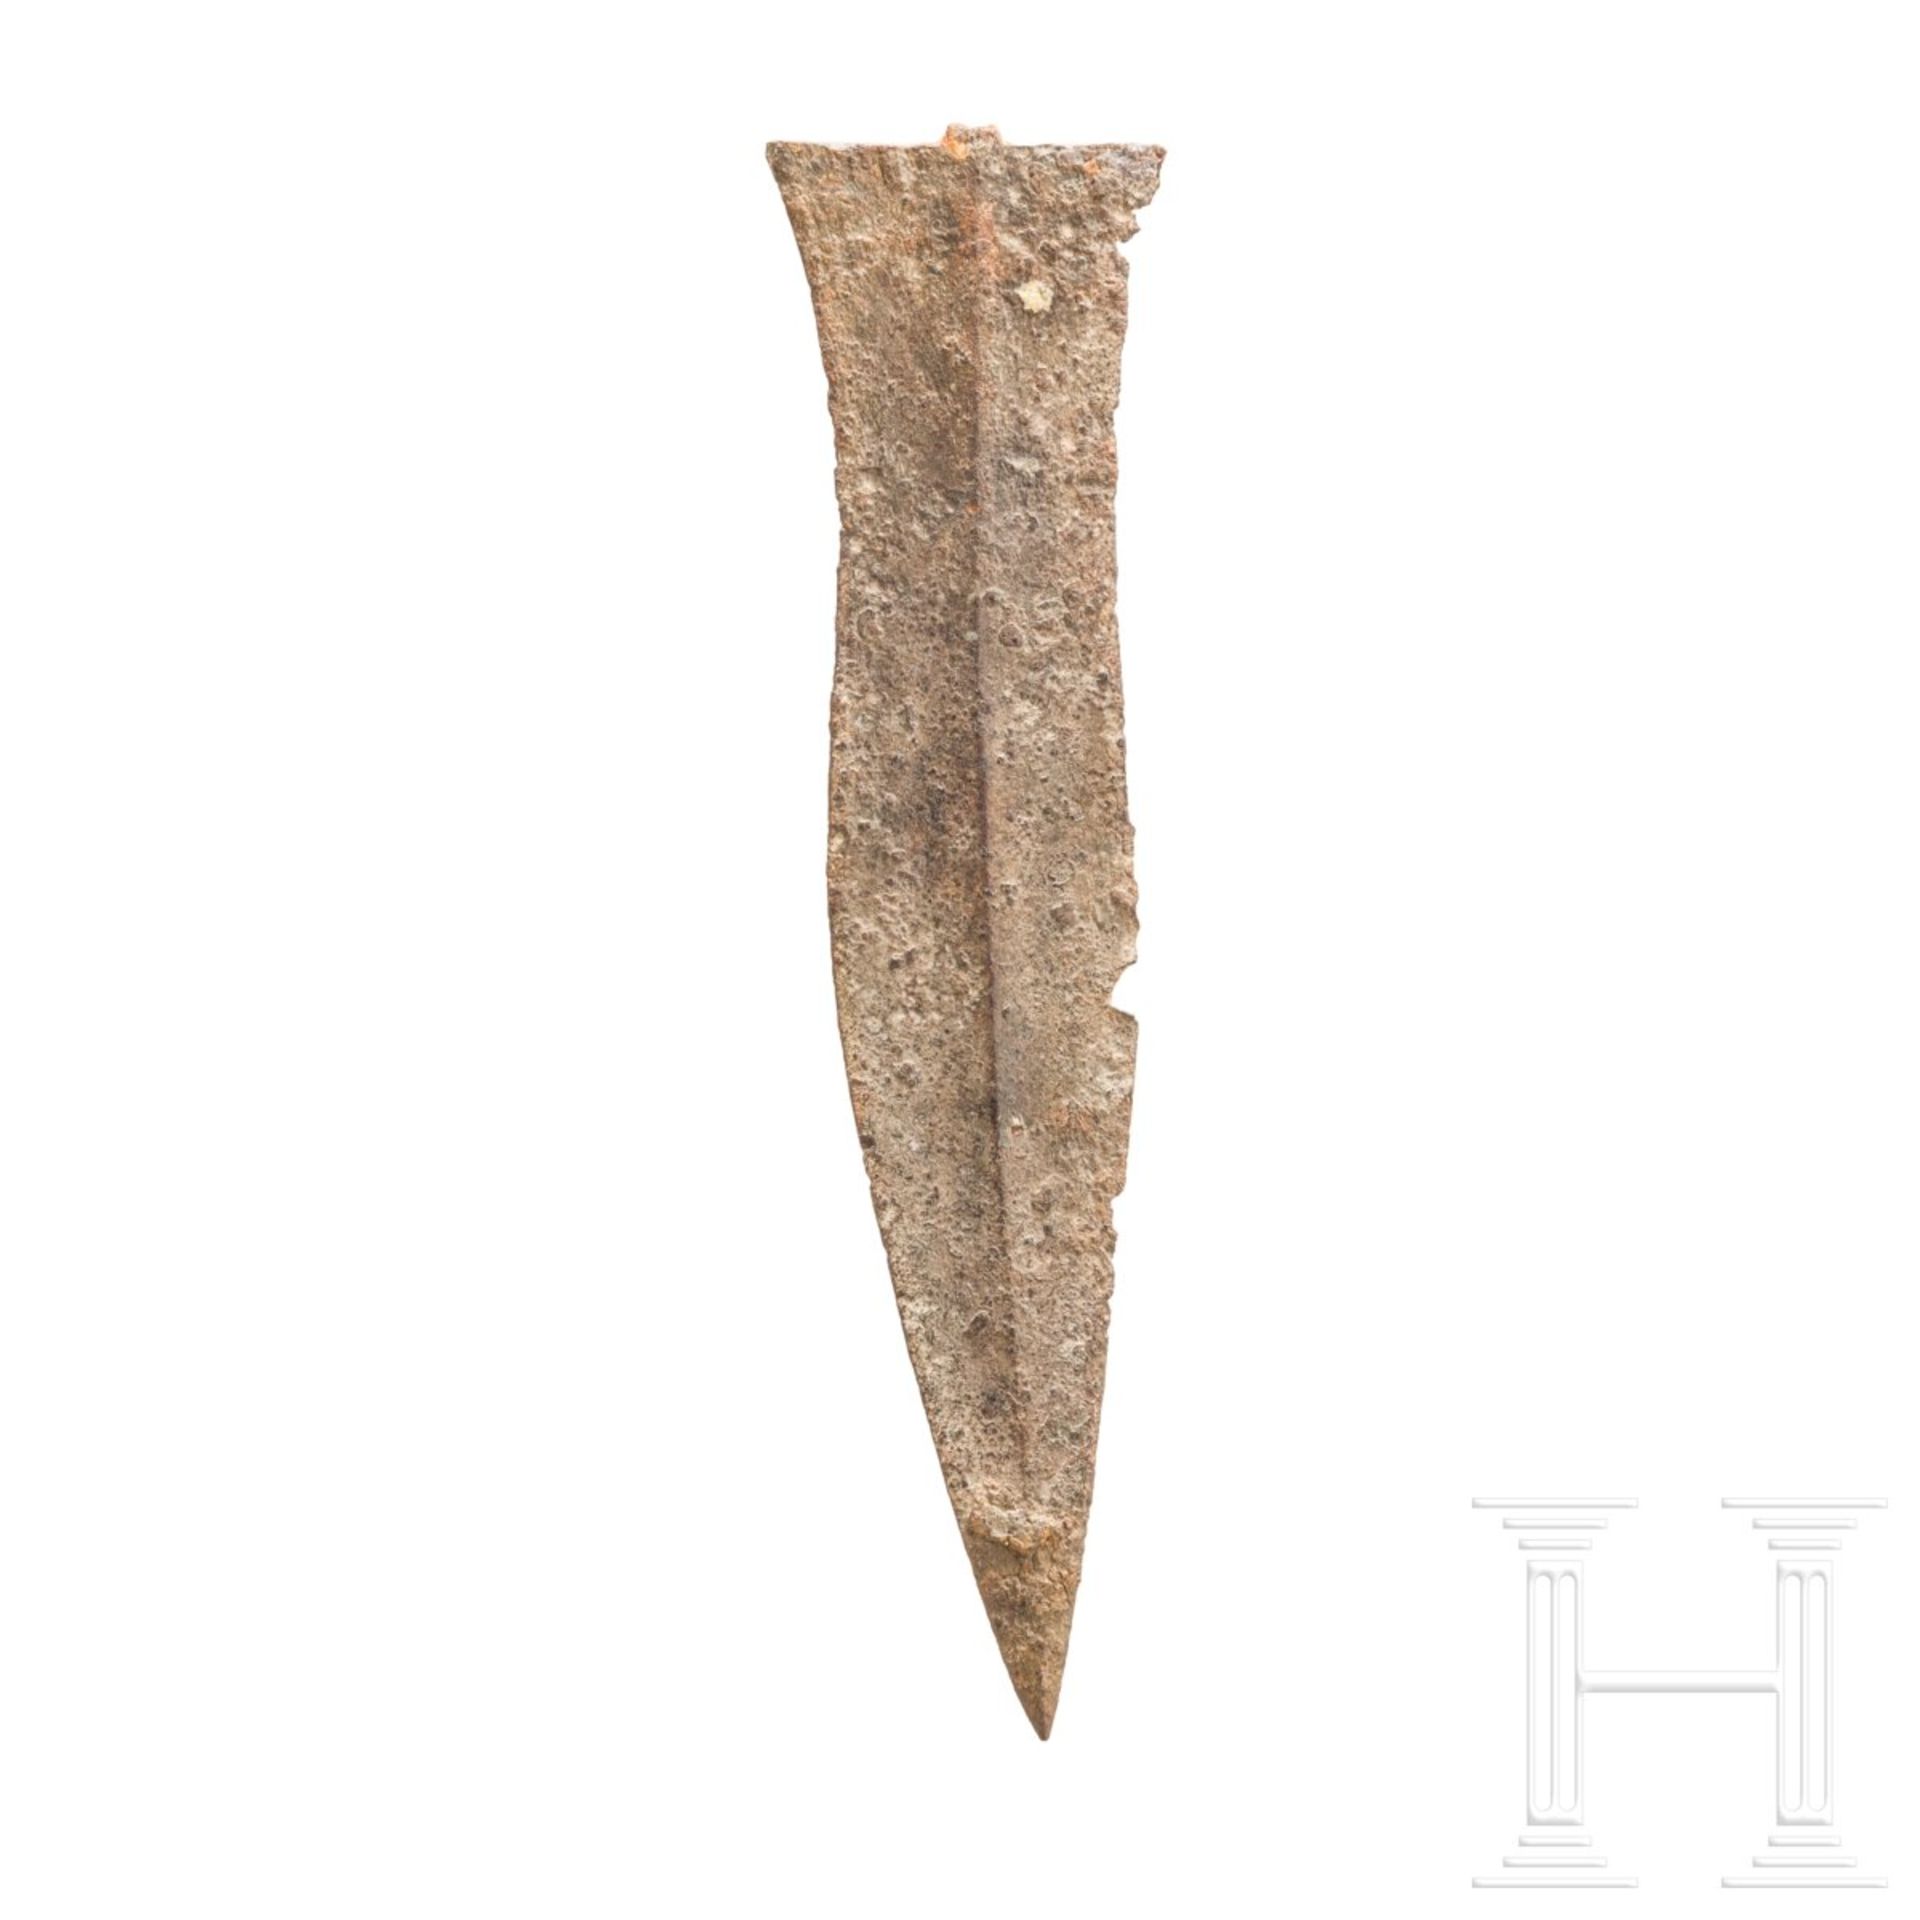 Dolchklinge vom Typ Künzing, römisch, 1. Hälfte - Mitte 3. Jhdt. n. Chr.